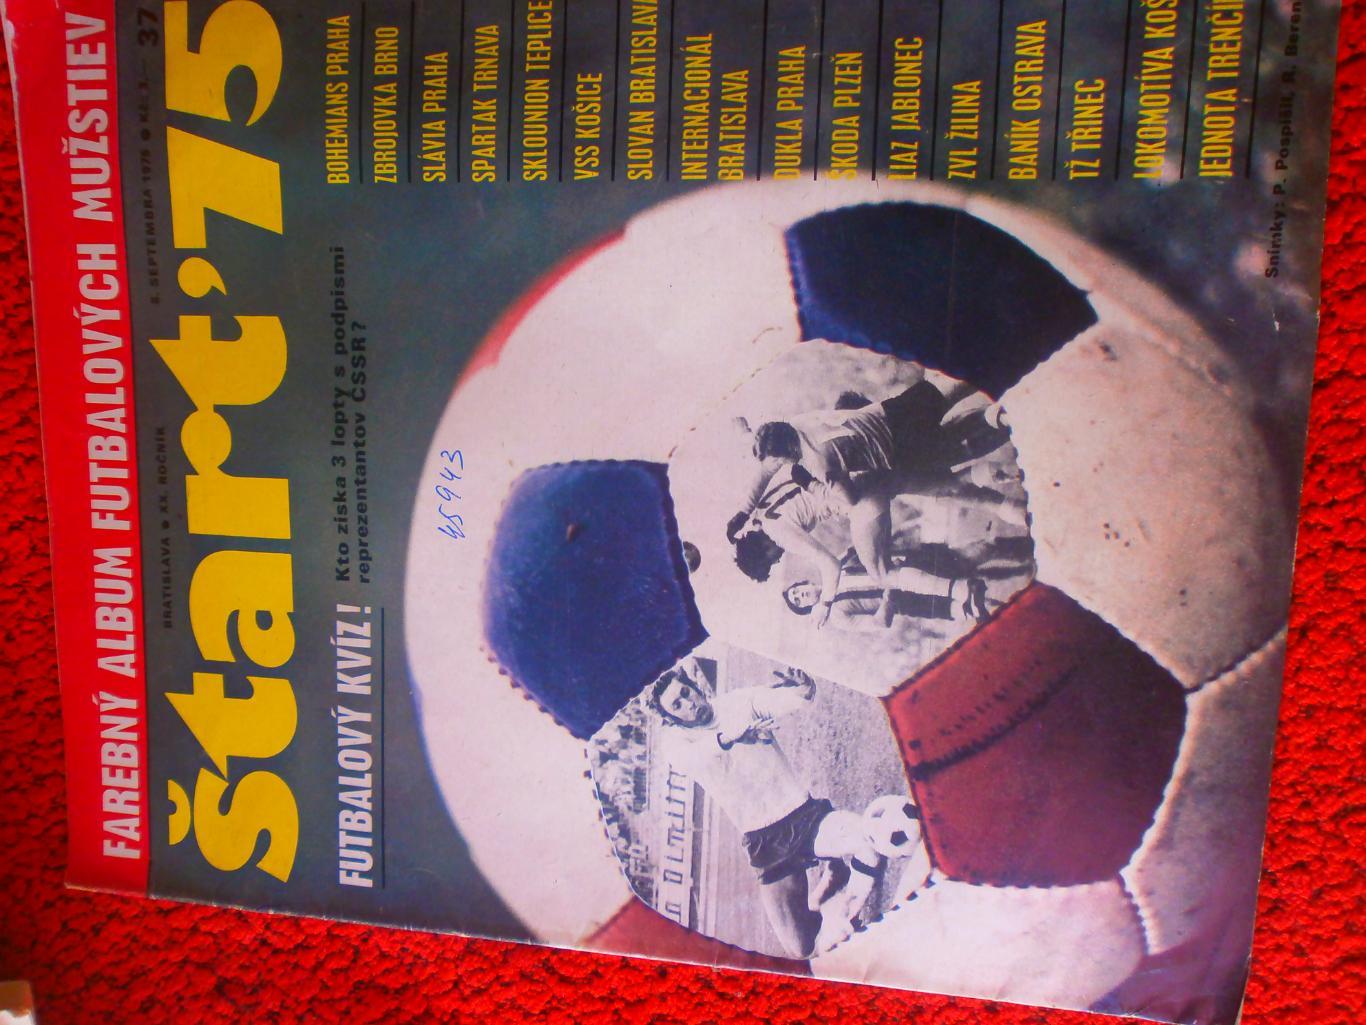 Журнал Старт Чехословакия сентябрь 1975г. Постеры 16 команд